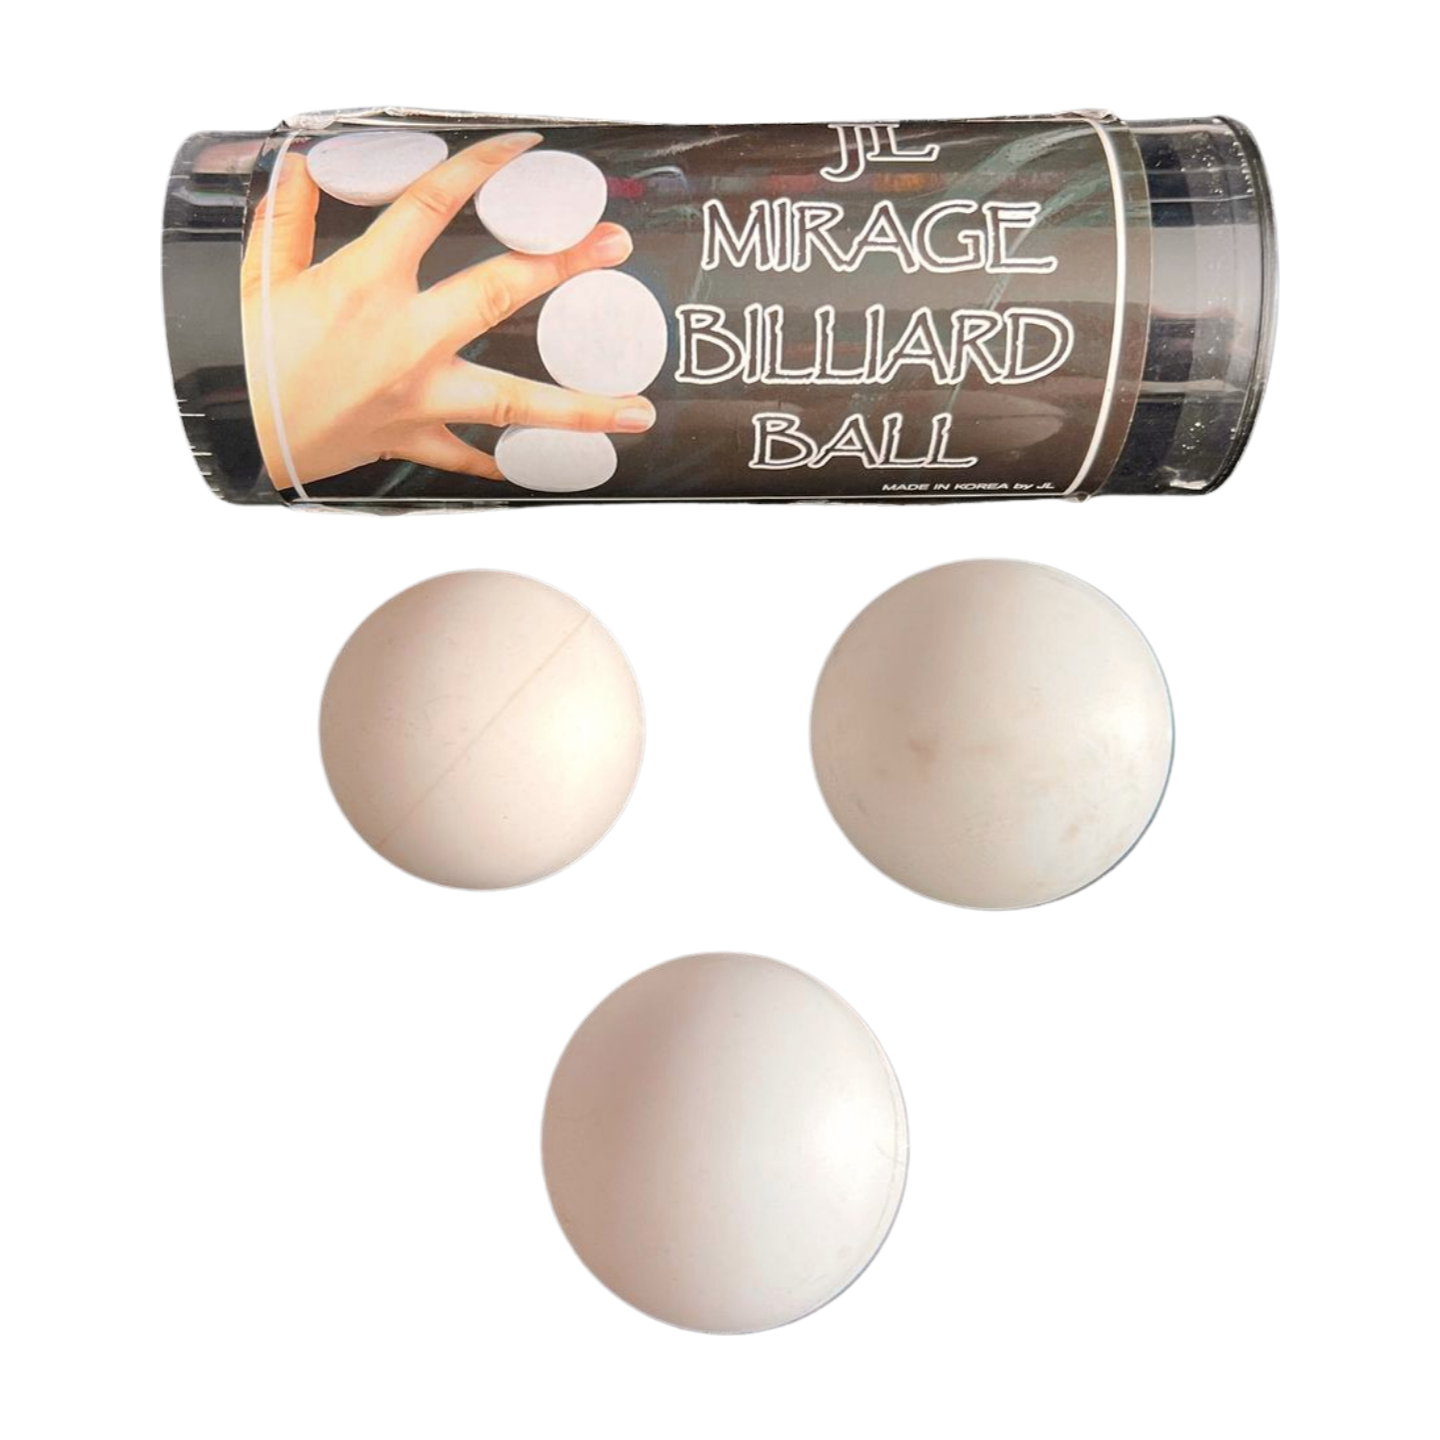 JL Mirage Billiard Balls - Pre Owned